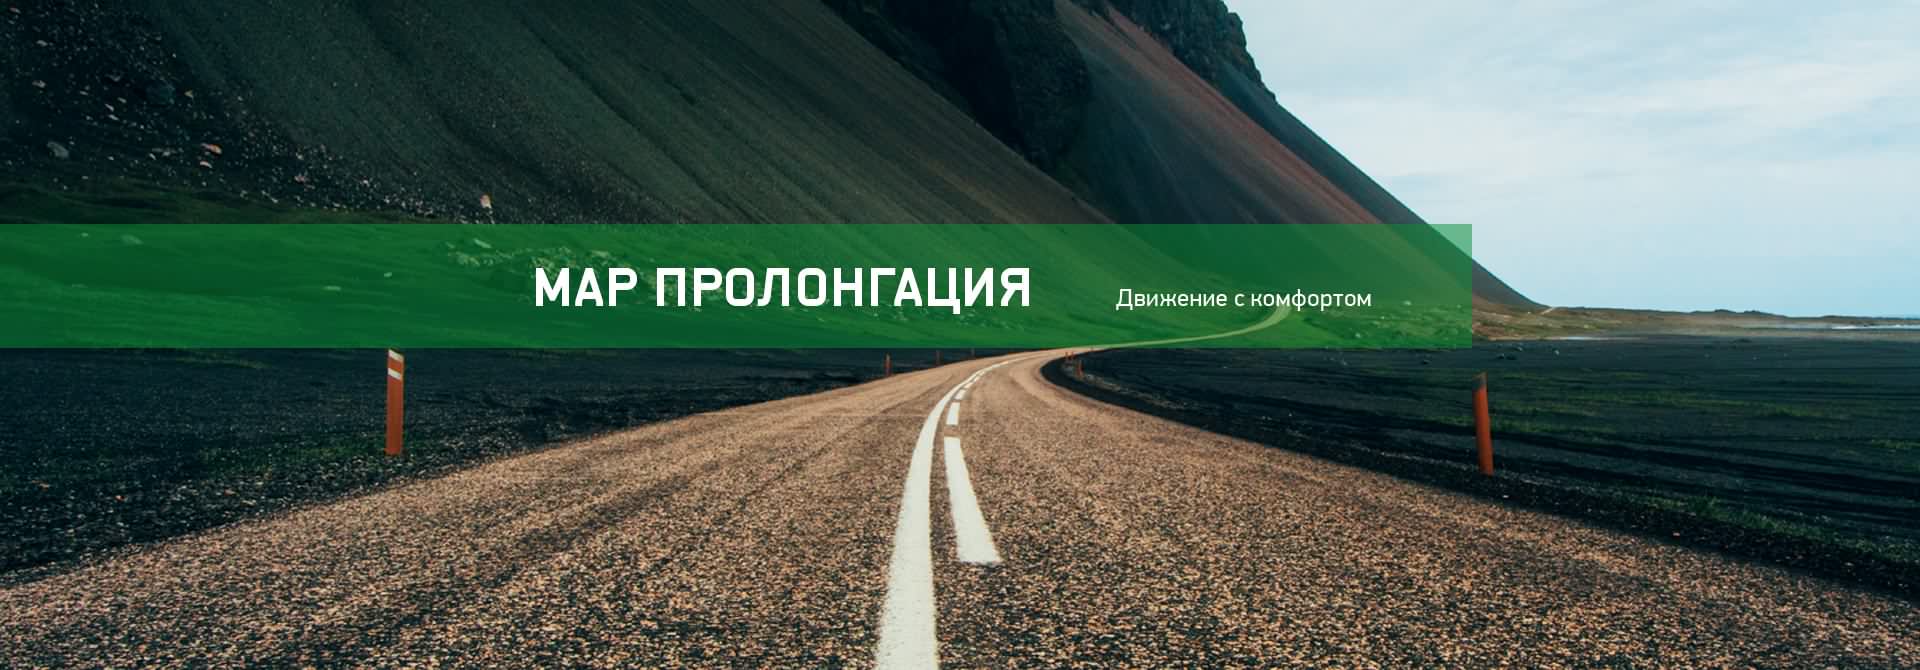 Программа МАР Пролонгация в Москве - Официальный дилер АвтоГЕРМЕС